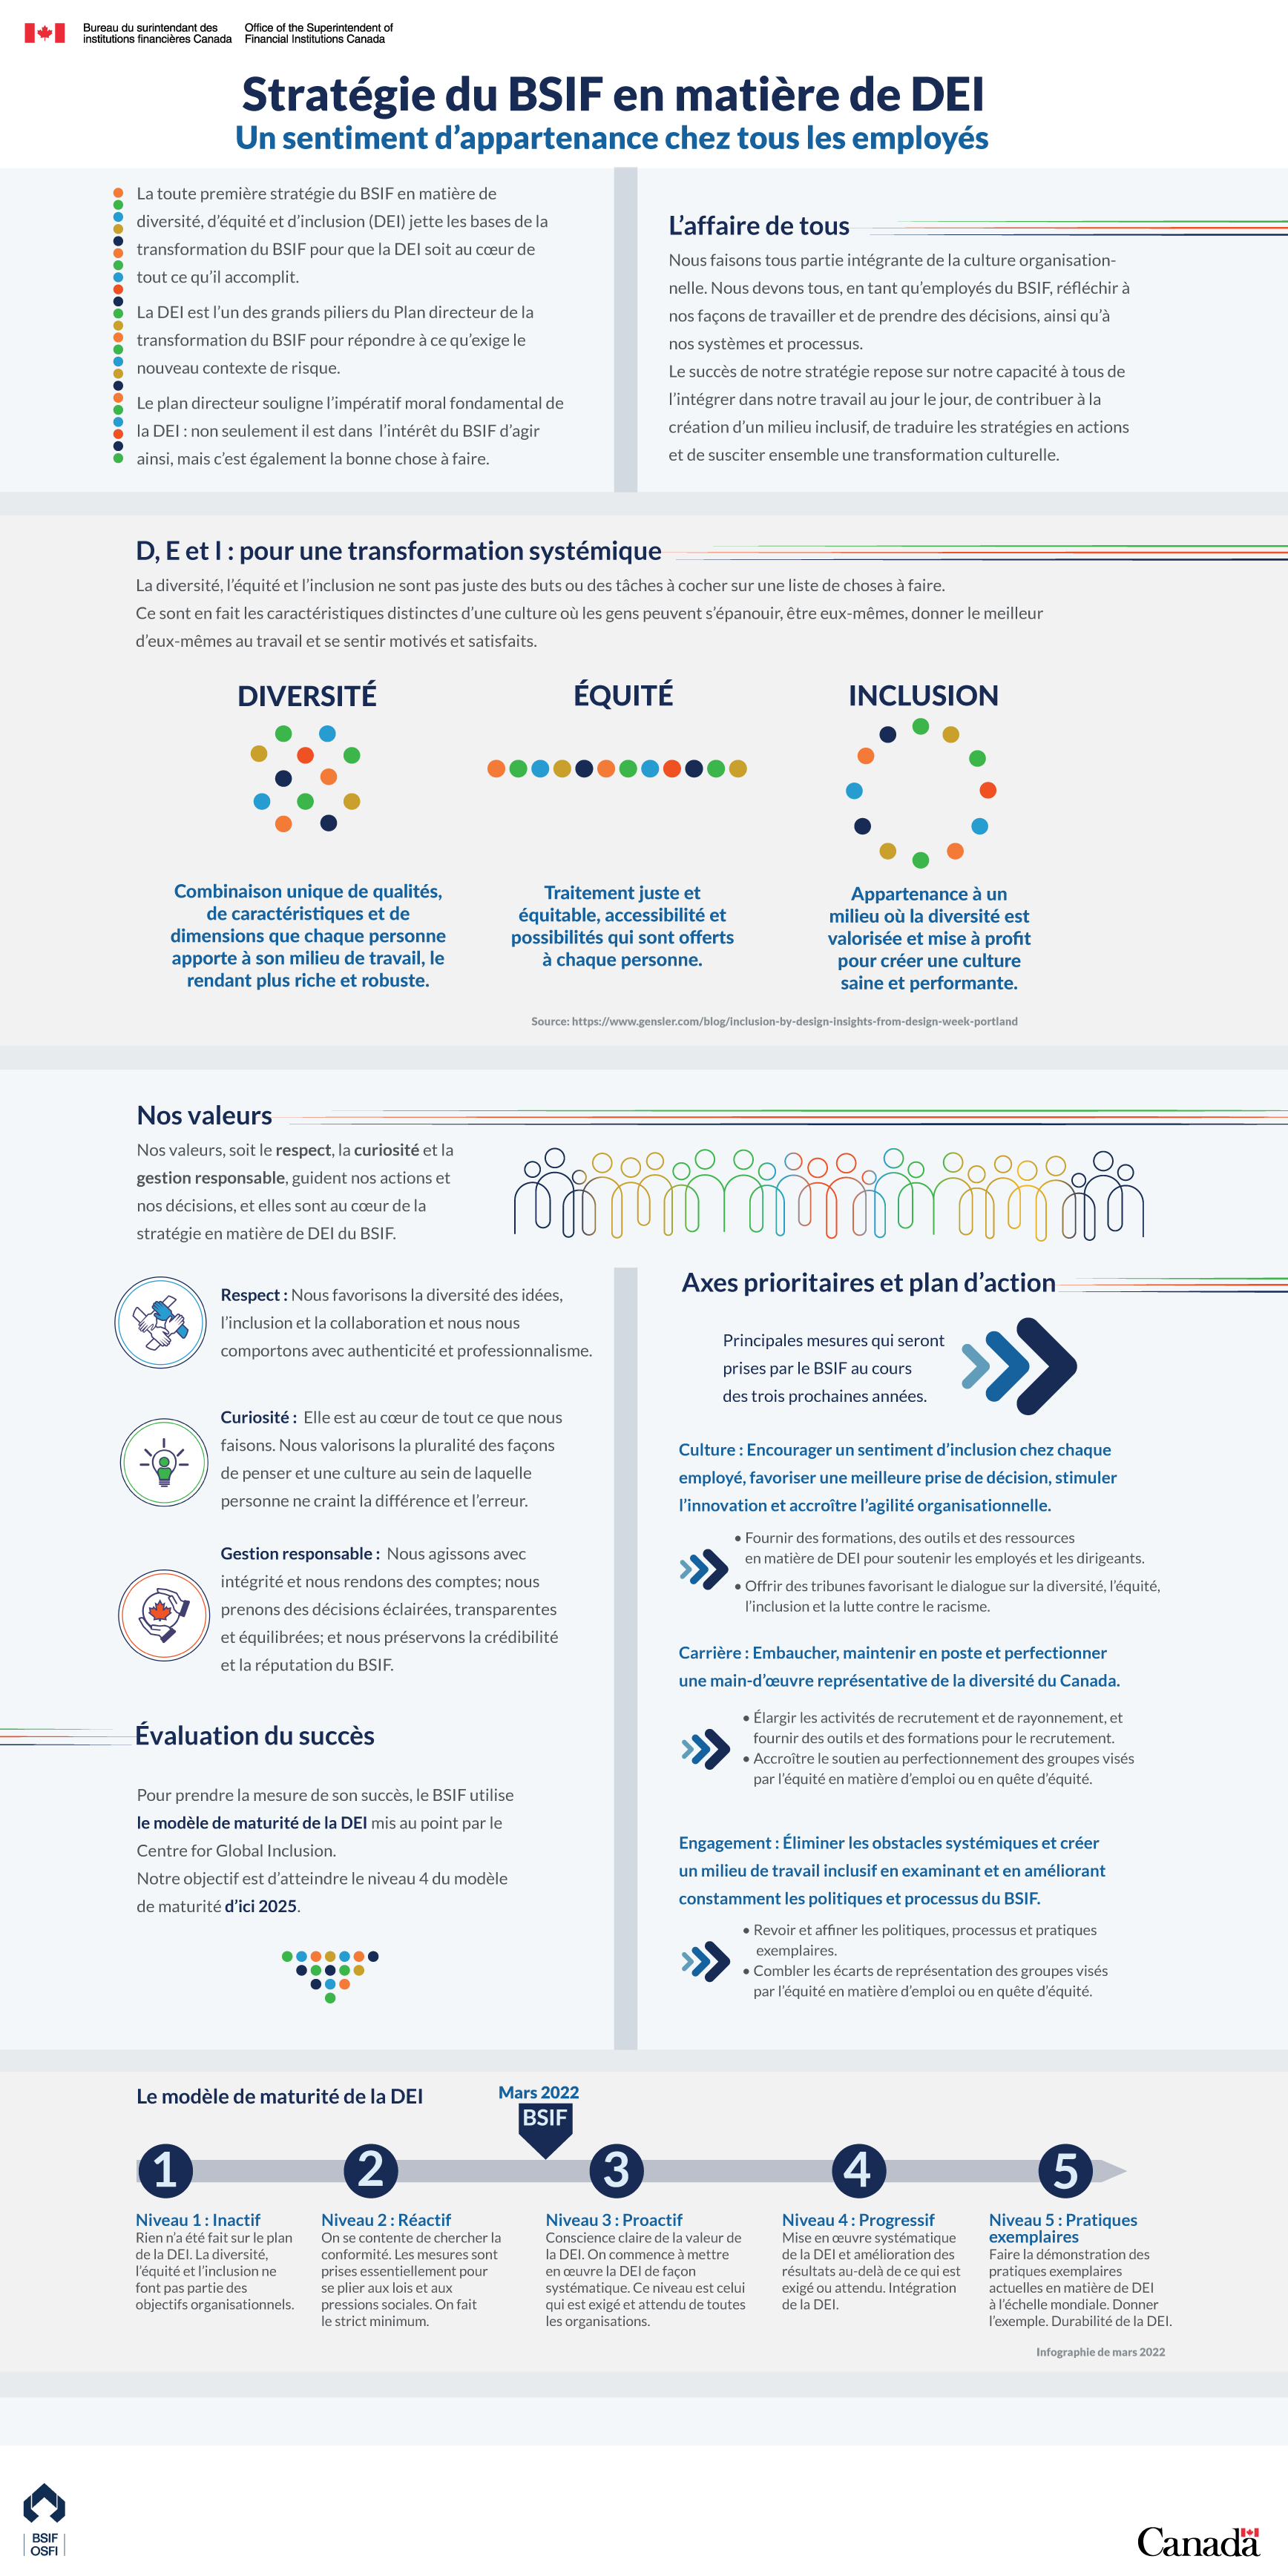 Infographie sur la Stratégie du BSIF en matière de diversité, d'équité et d'inclusion